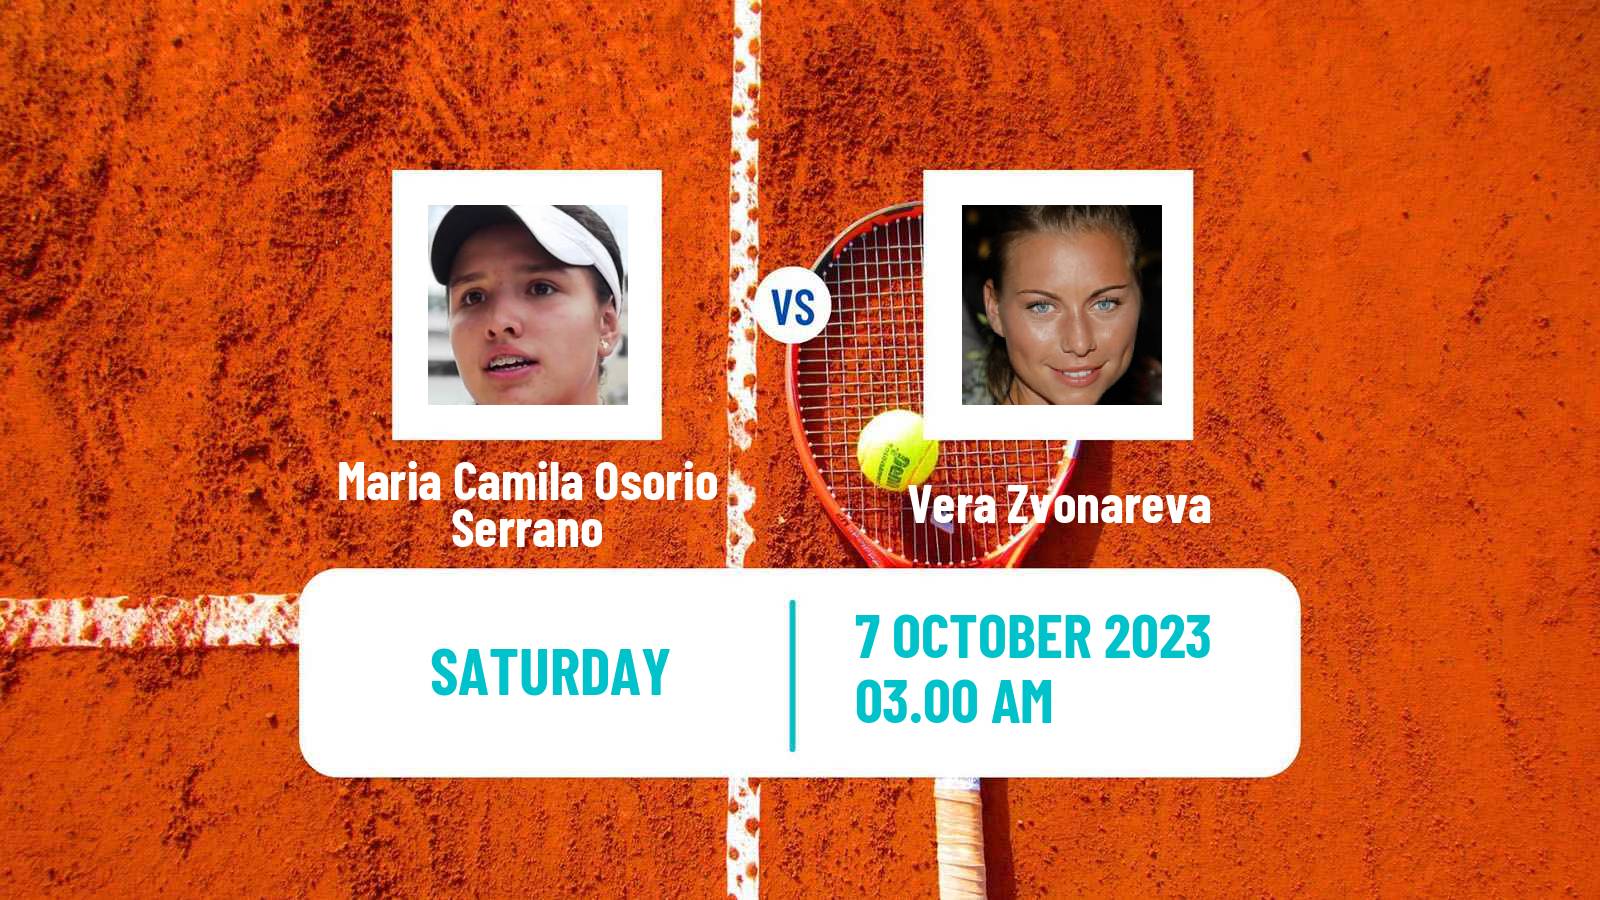 Tennis WTA Zhengzhou Maria Camila Osorio Serrano - Vera Zvonareva